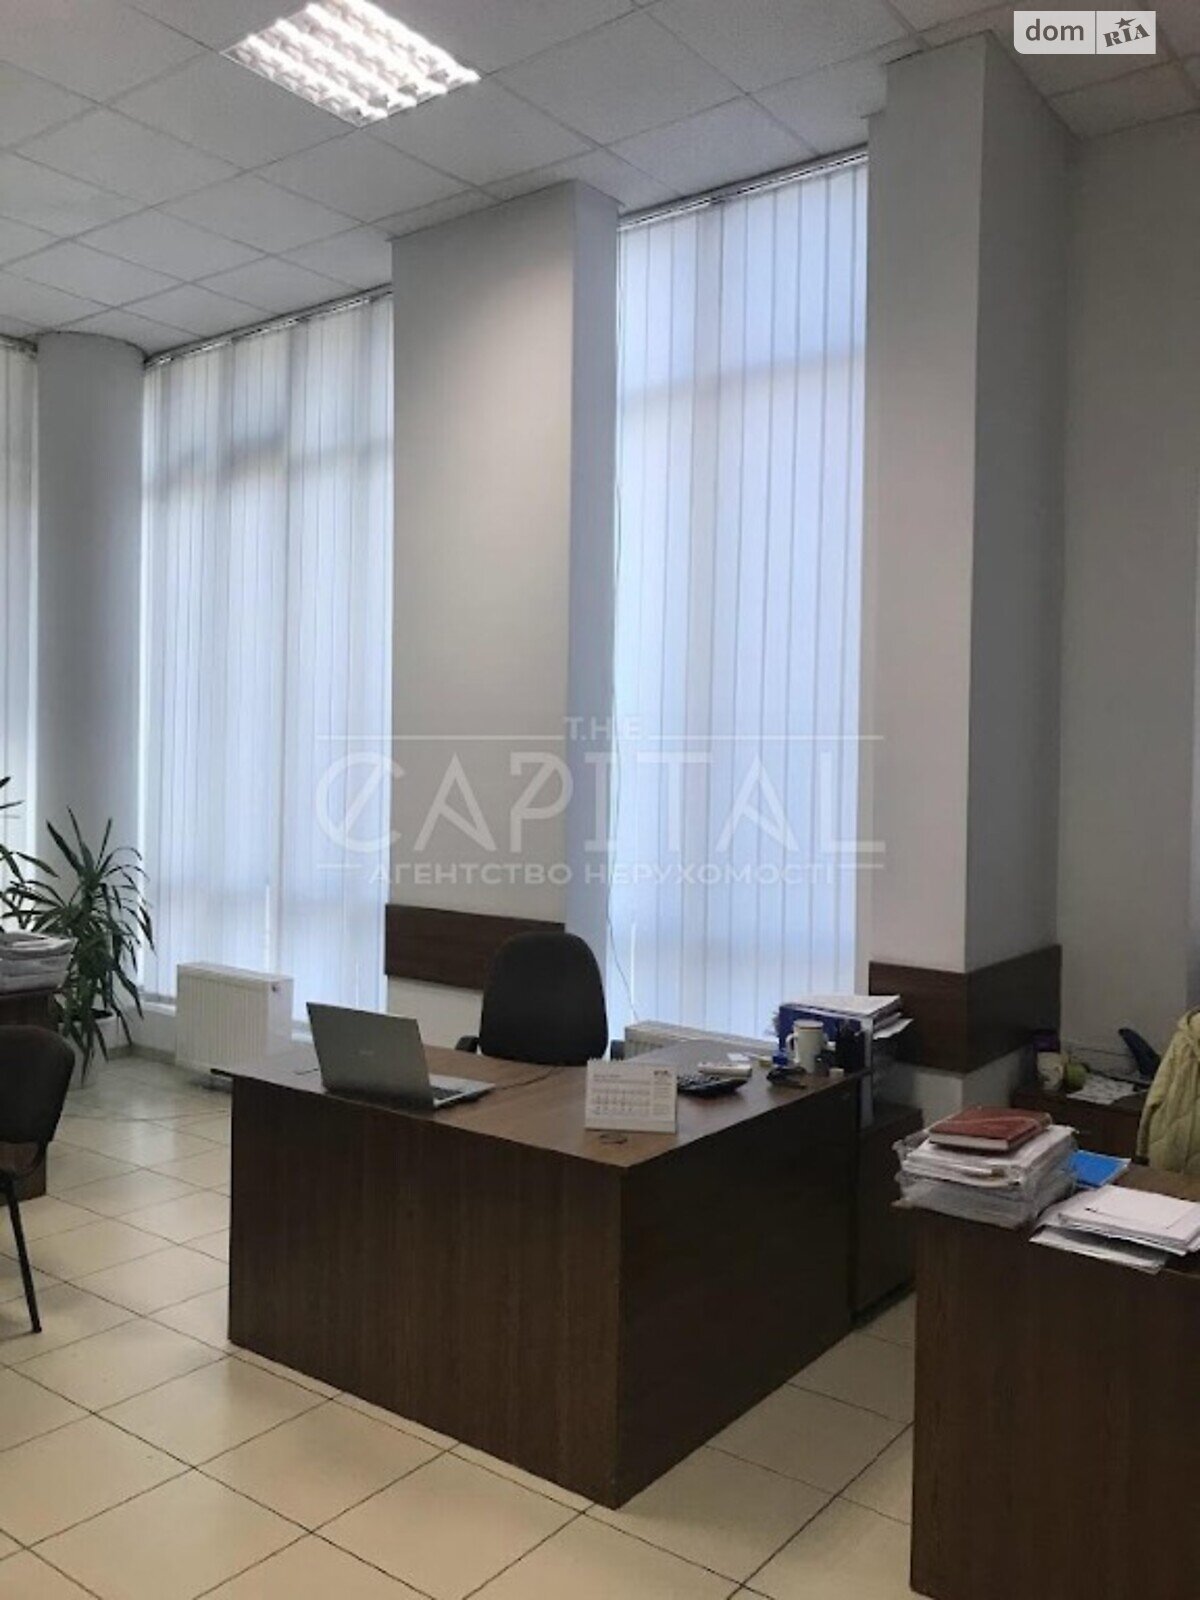 Аренда офисного помещения в Киеве, Крестовый (Гайцана) переулок 2, помещений - 4, этаж - 1 фото 1